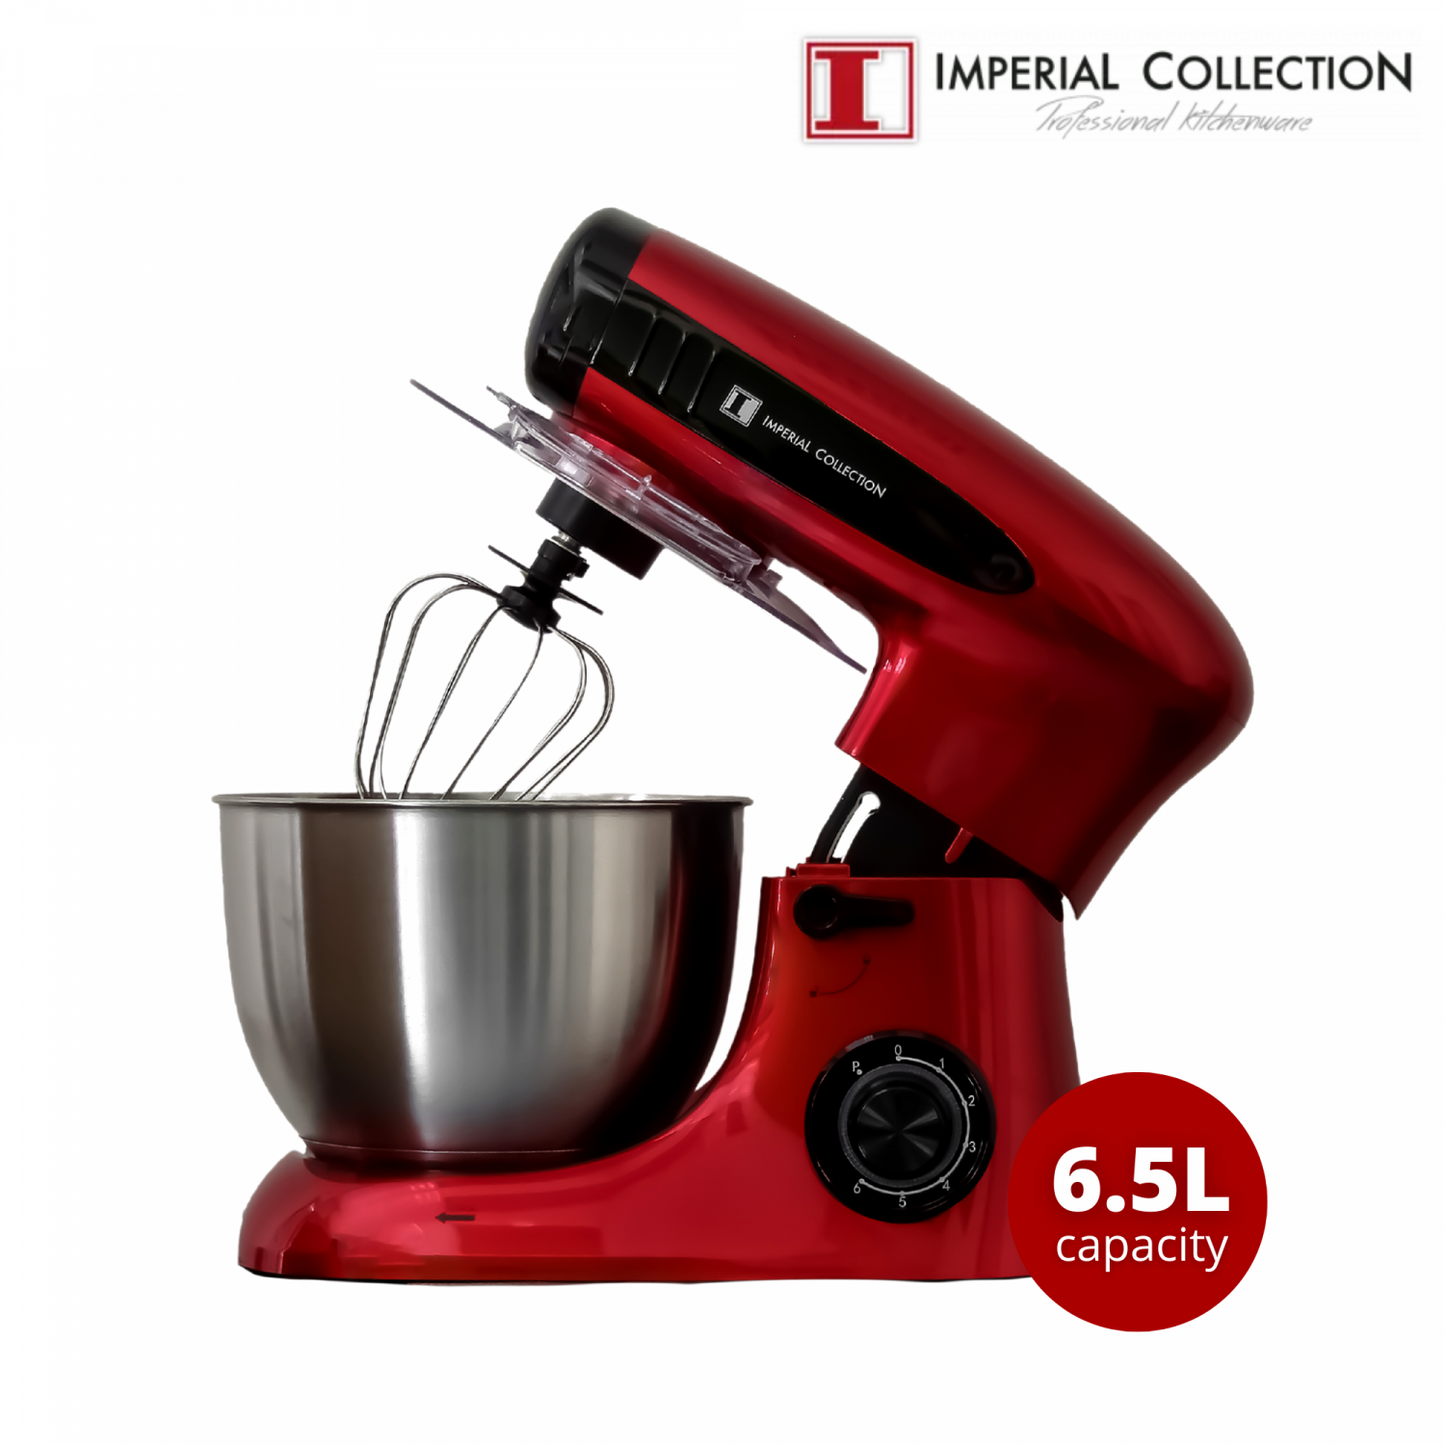 Imperial Collection multifunctionele 4in1 mixer/keukenrobot met kantelbare kop, rood - Design Meubelz